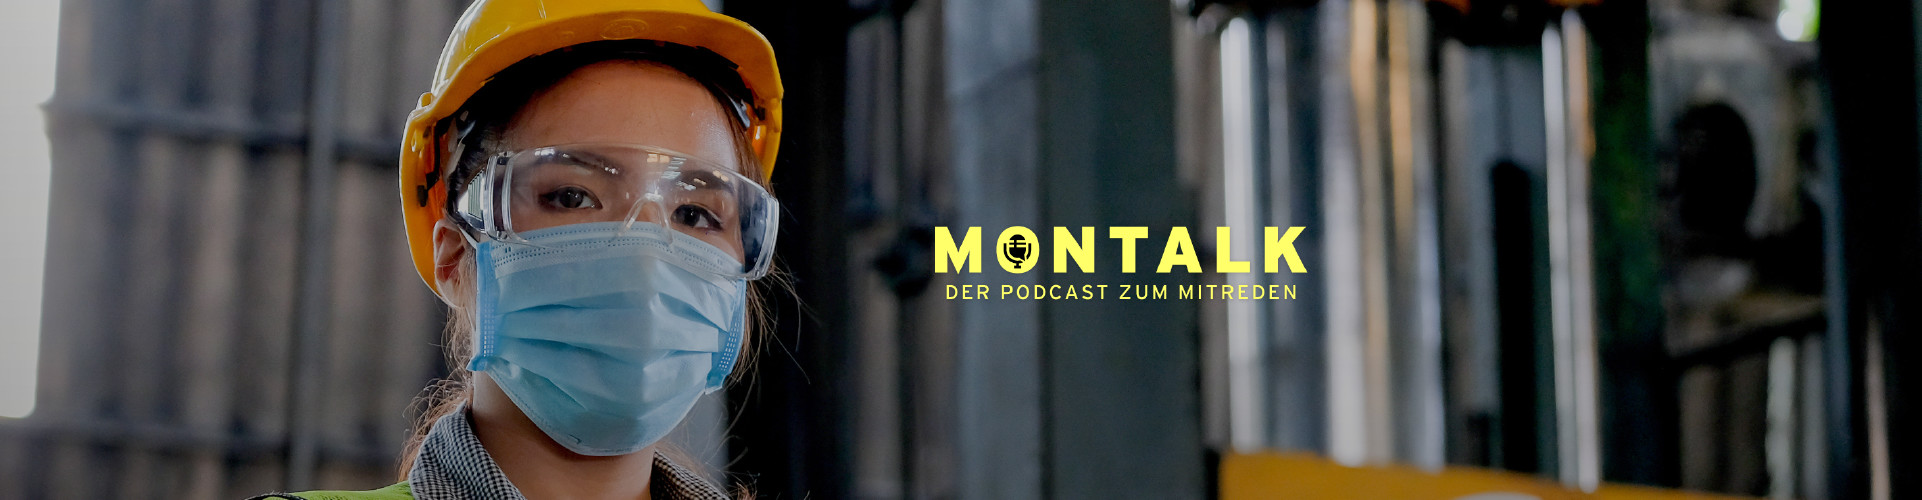 MONTALK - Der Podcast zum Mitreden © Gattinger, AK Niederösterreich